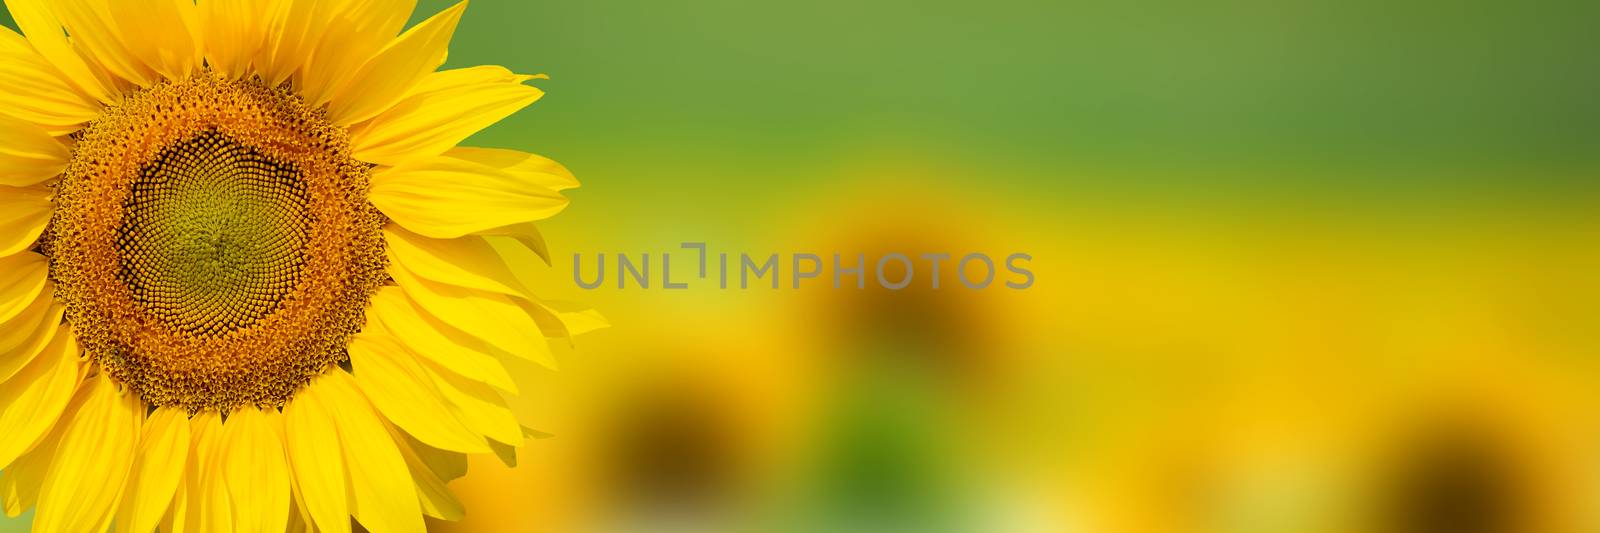 Yellow fresh sunflower background